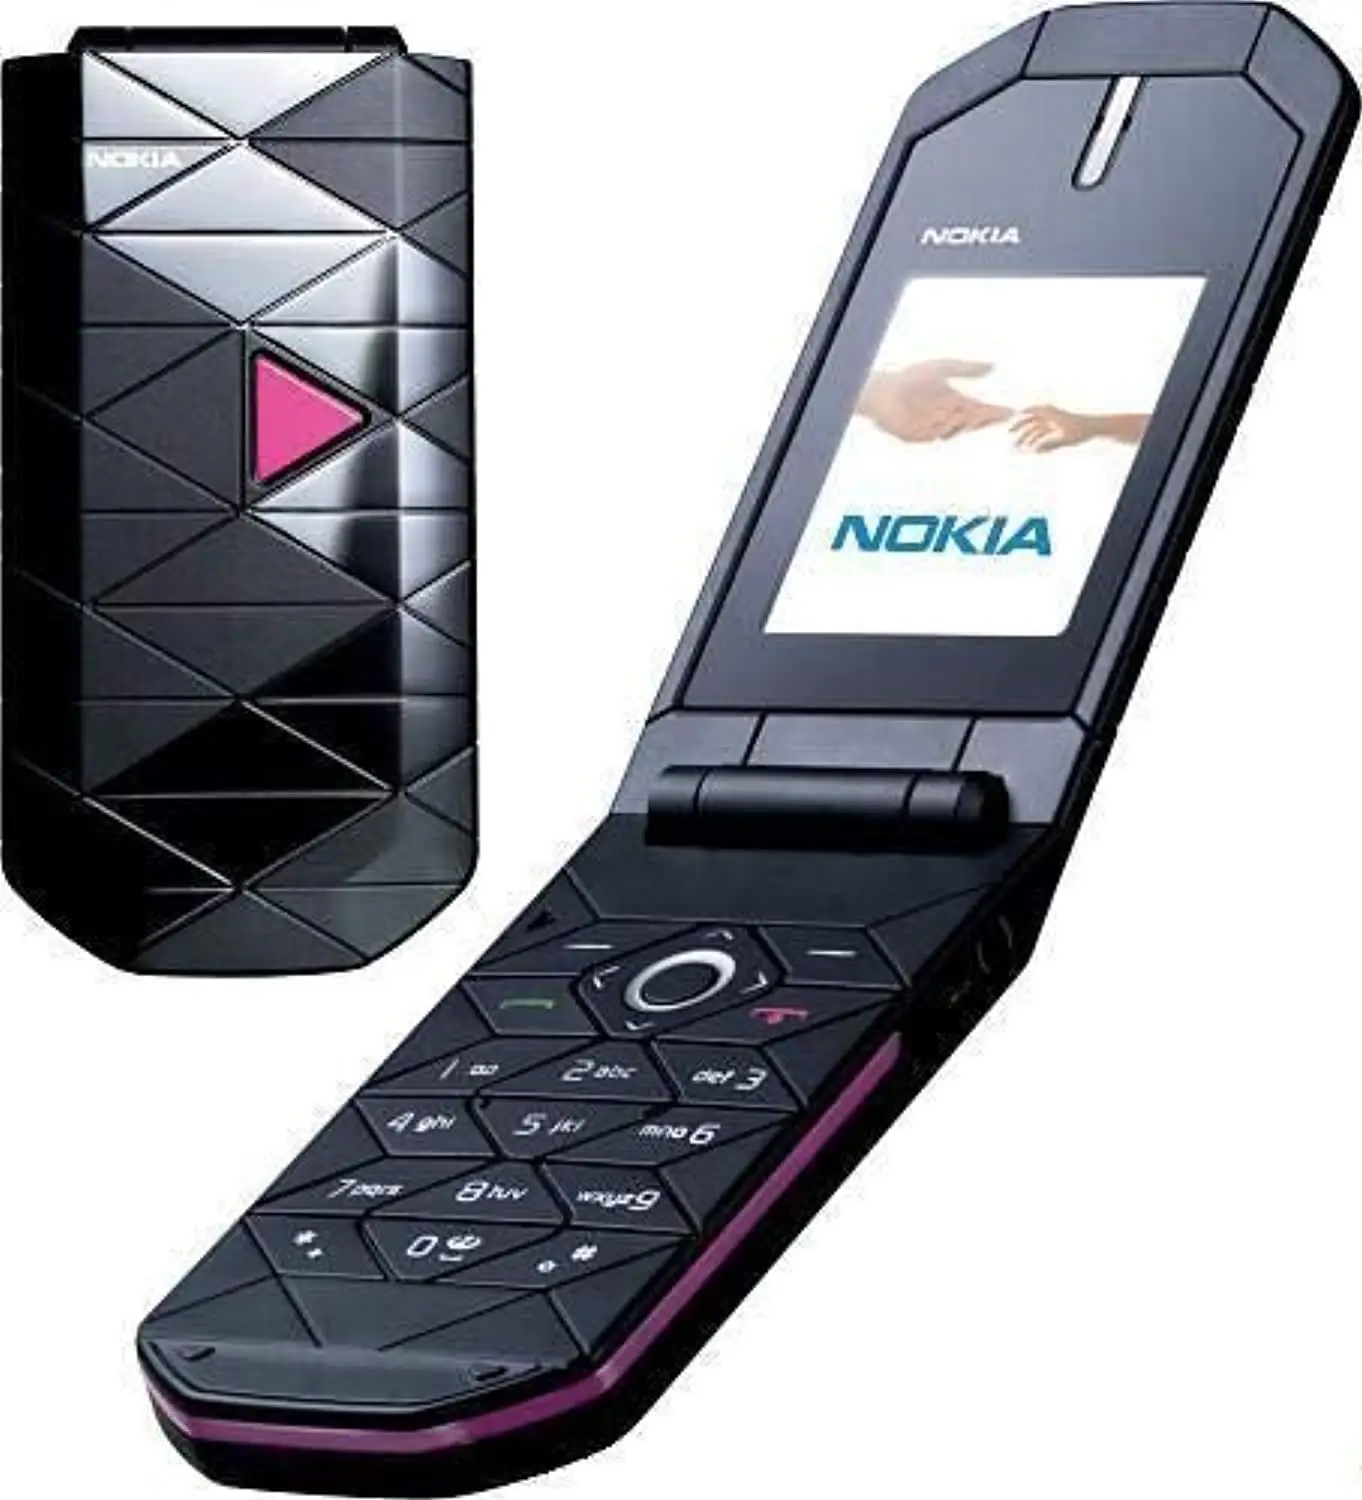 Gebrauchtes Handy für Nokia Prisma gebrauchtes Handy hochwertige Flip Phone Großhandel günstigen Preis schnelle Lieferung